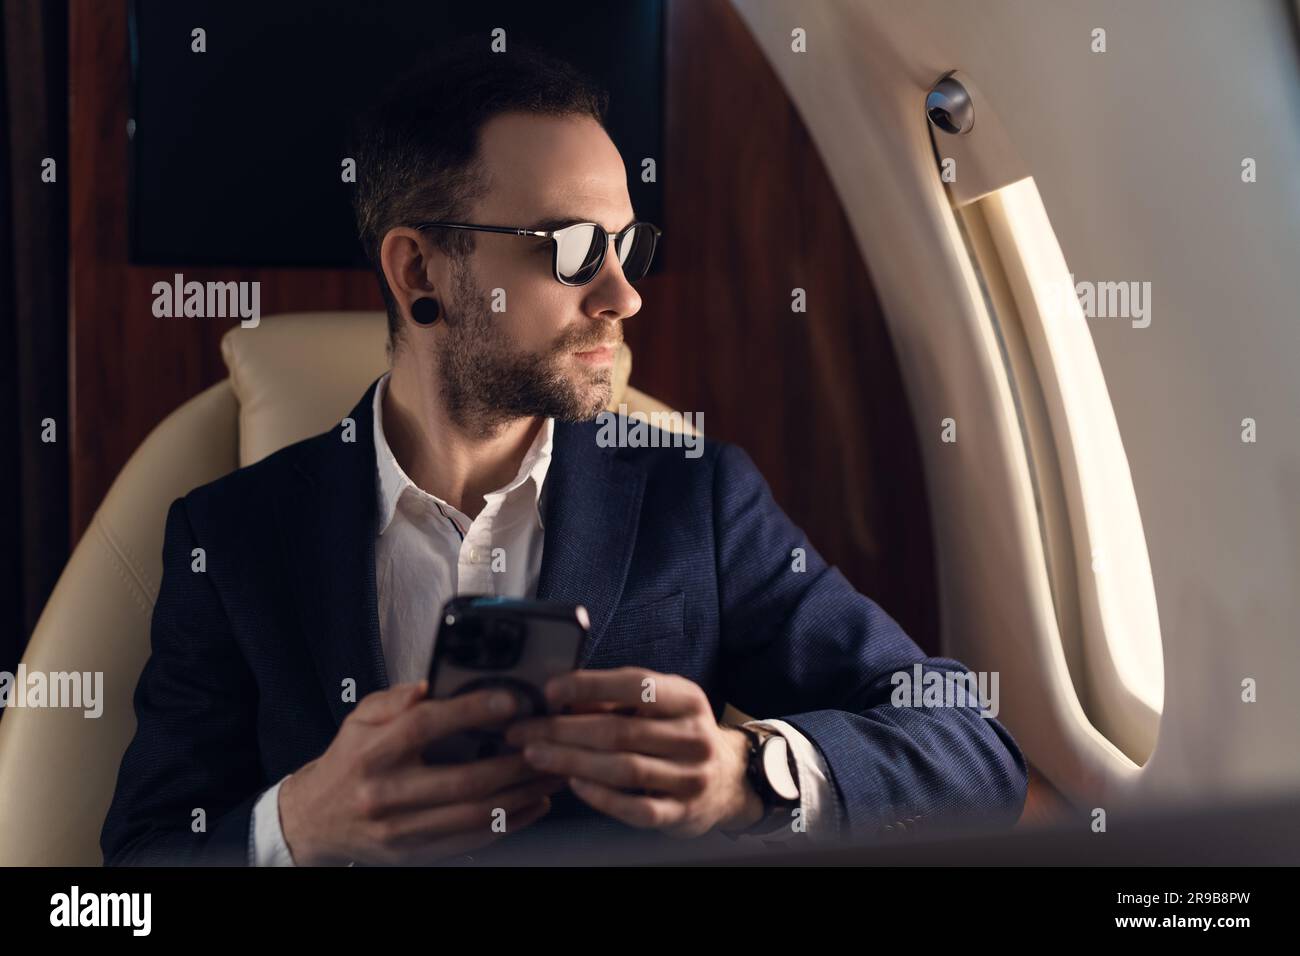 Élégant Jeune homme d'affaires confiant PDG dans des lunettes de soleil dans une veste homme assis à l'intérieur dans la première classe de jet privé tout en utilisant un smartphone moderne Banque D'Images